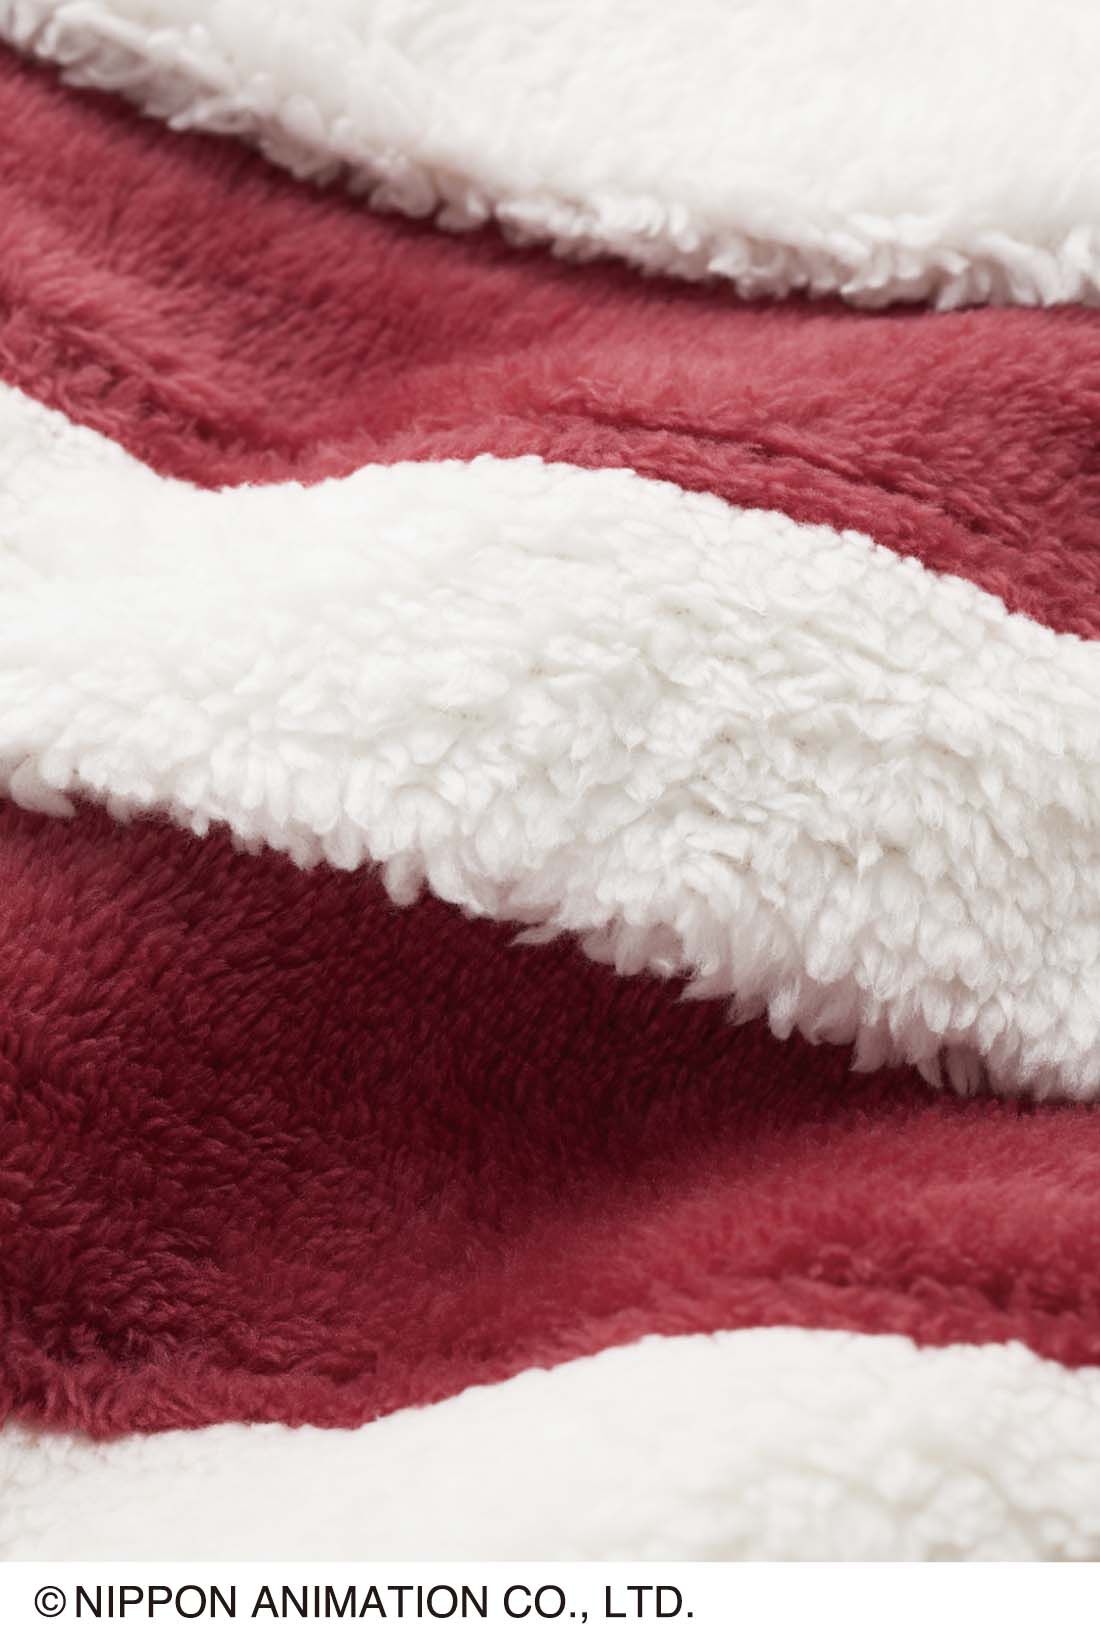 Live in  comfort|世界名作劇場×フェリシモ　小公女セーラ プリンセスセーラのコートをイメージした暖かケープ 〈プリンセスピンク〉|毛足のあるシャギー素材に、 ふくふくの白いボアで暖かく。